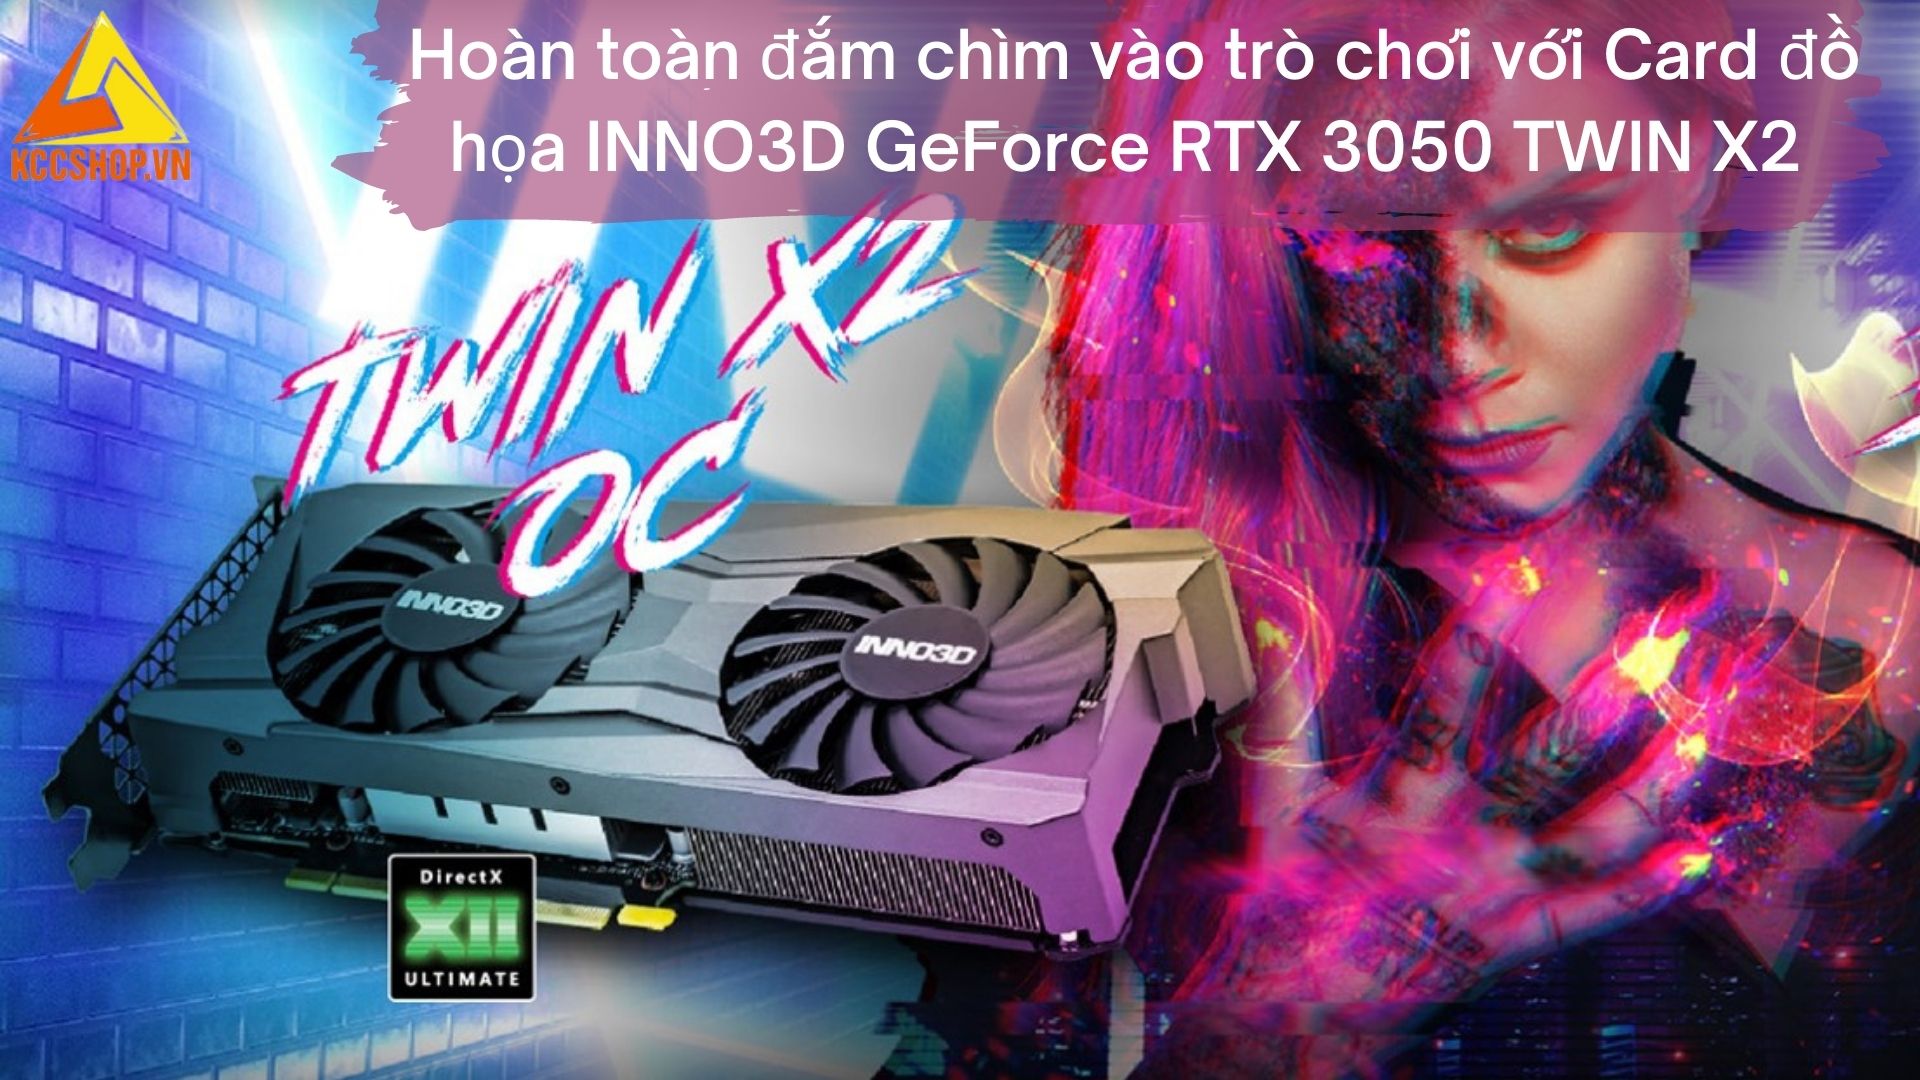 Hoàn toàn đắm chìm vào trò chơi với Card đồ họa INNO3D GeForce RTX 3050 TWIN X2